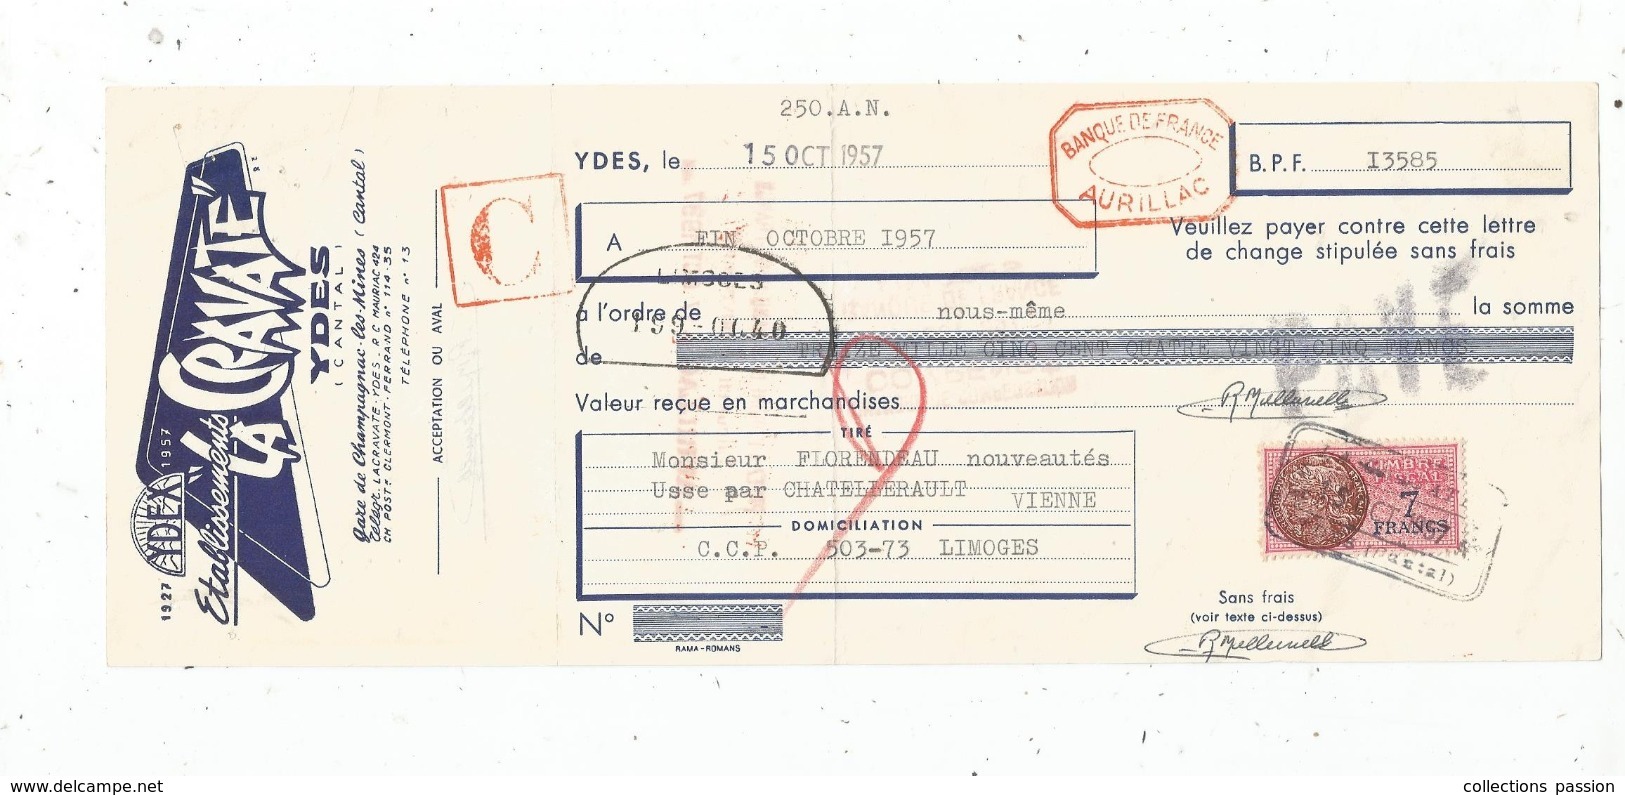 Lettre De Change , 1957 , Ets LA CRAVATE , YDES , CANTAL , Timbré , 2 Scans ,  Frais Fr : 1.55 Euros - Bills Of Exchange